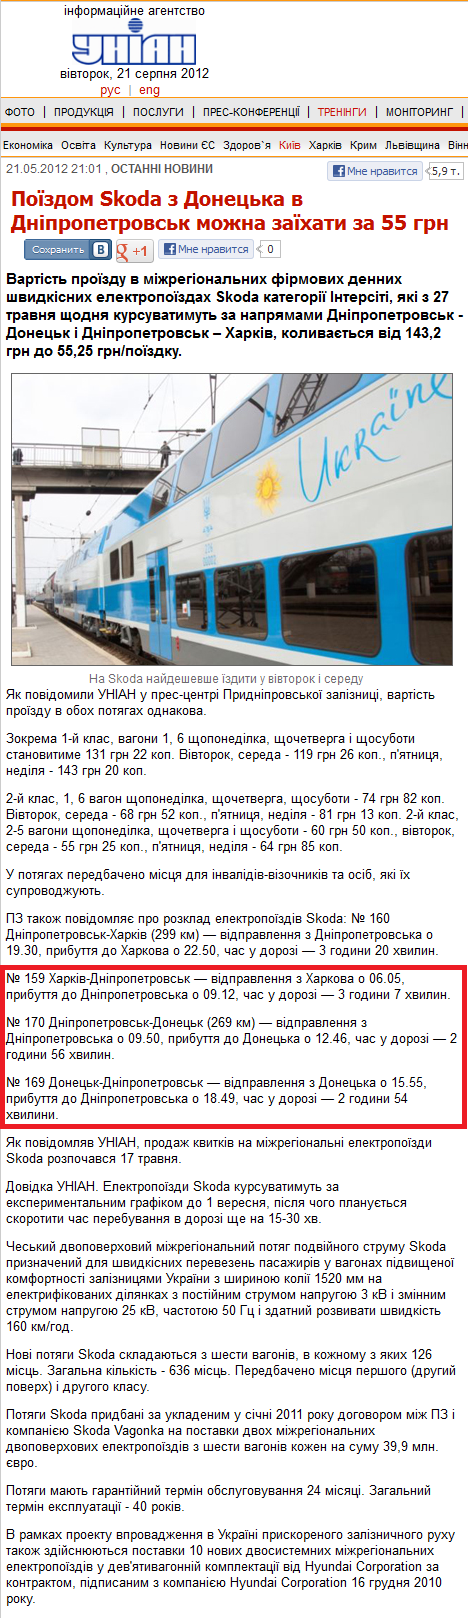 http://www.unian.ua/news/504737-pojizdom-skoda-z-donetska-v-dnipropetrovsk-mojna-zajihati-za-55-grn.html